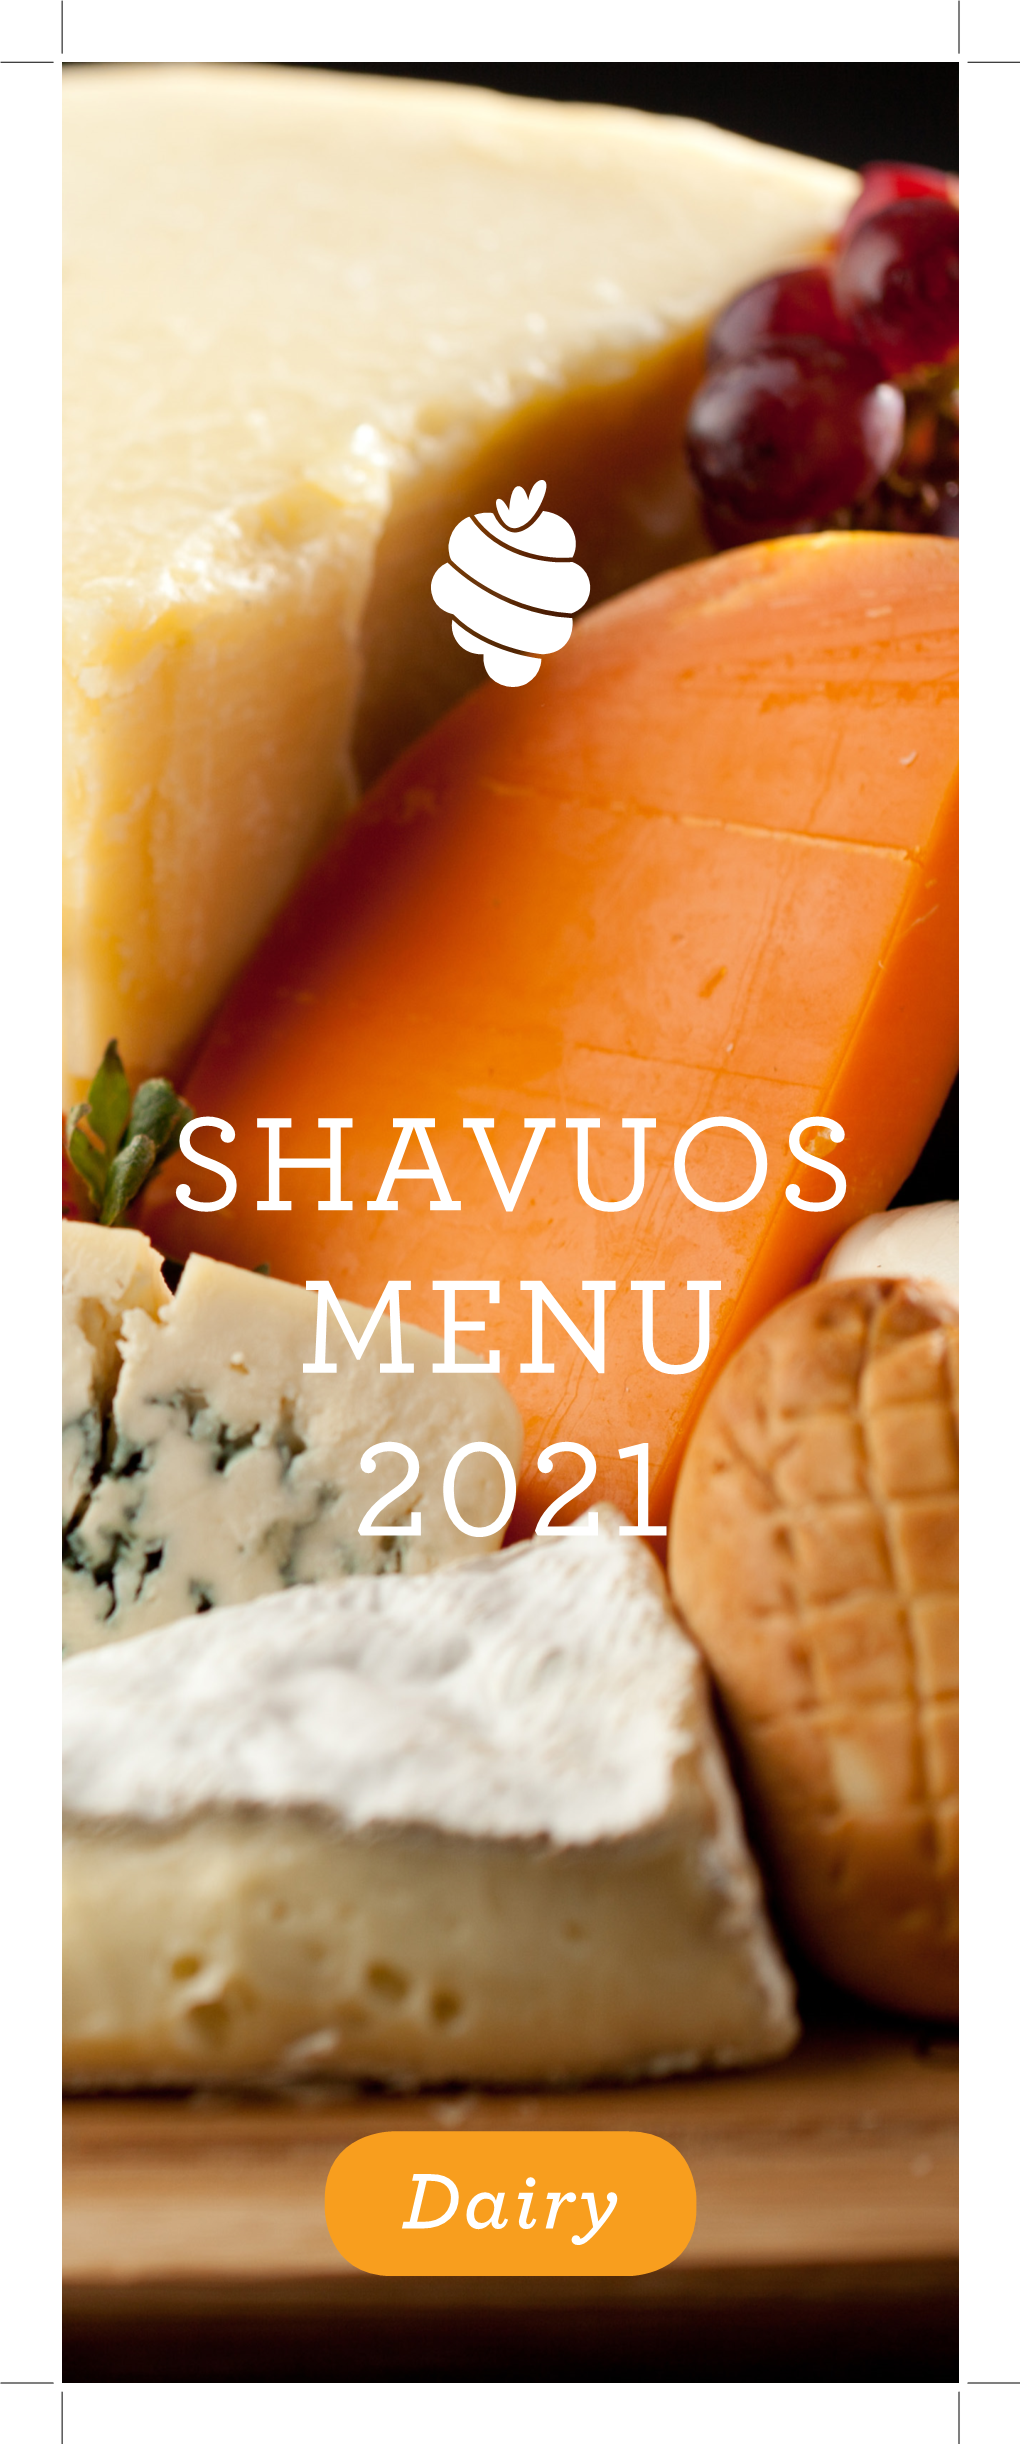 Shavuos Menu 2021